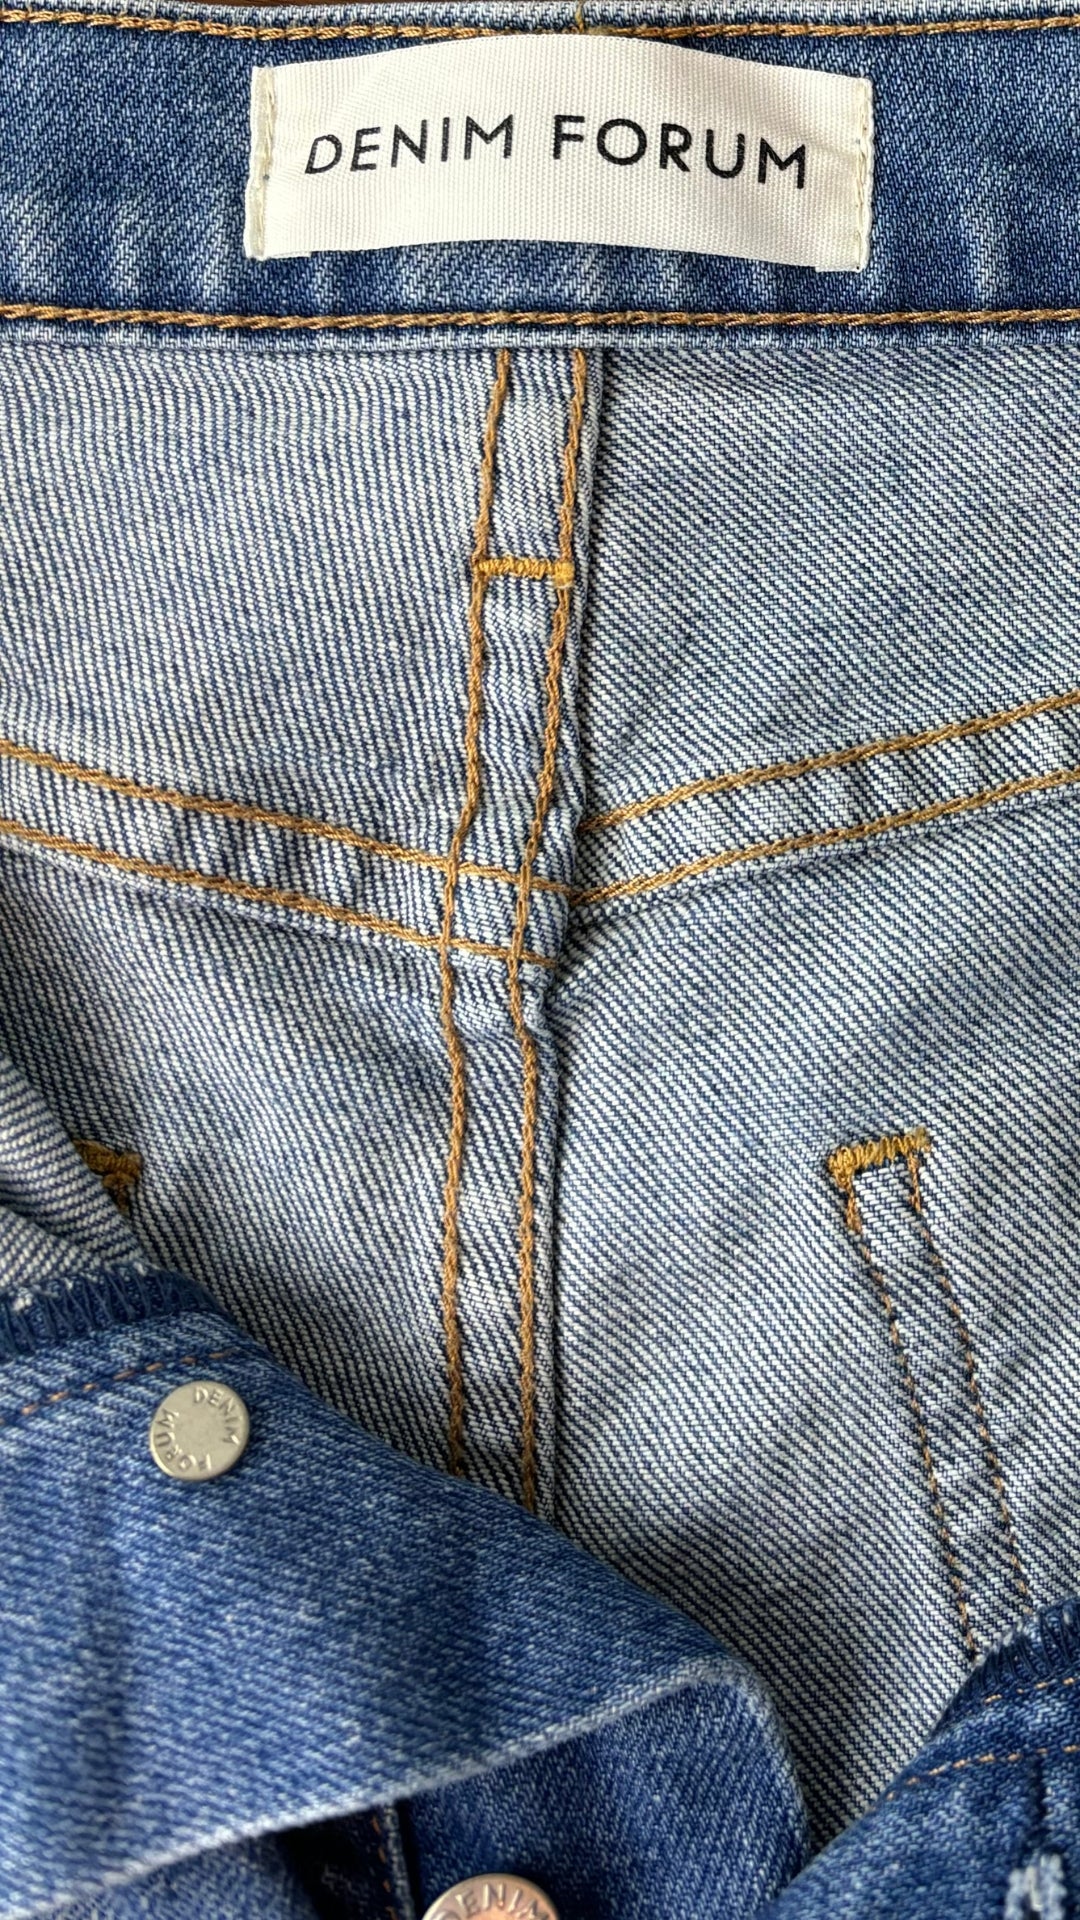 Jeans droit taille haute modèle Arlo Denim Forum, taille 26. Vue de l'étiquette de marque.